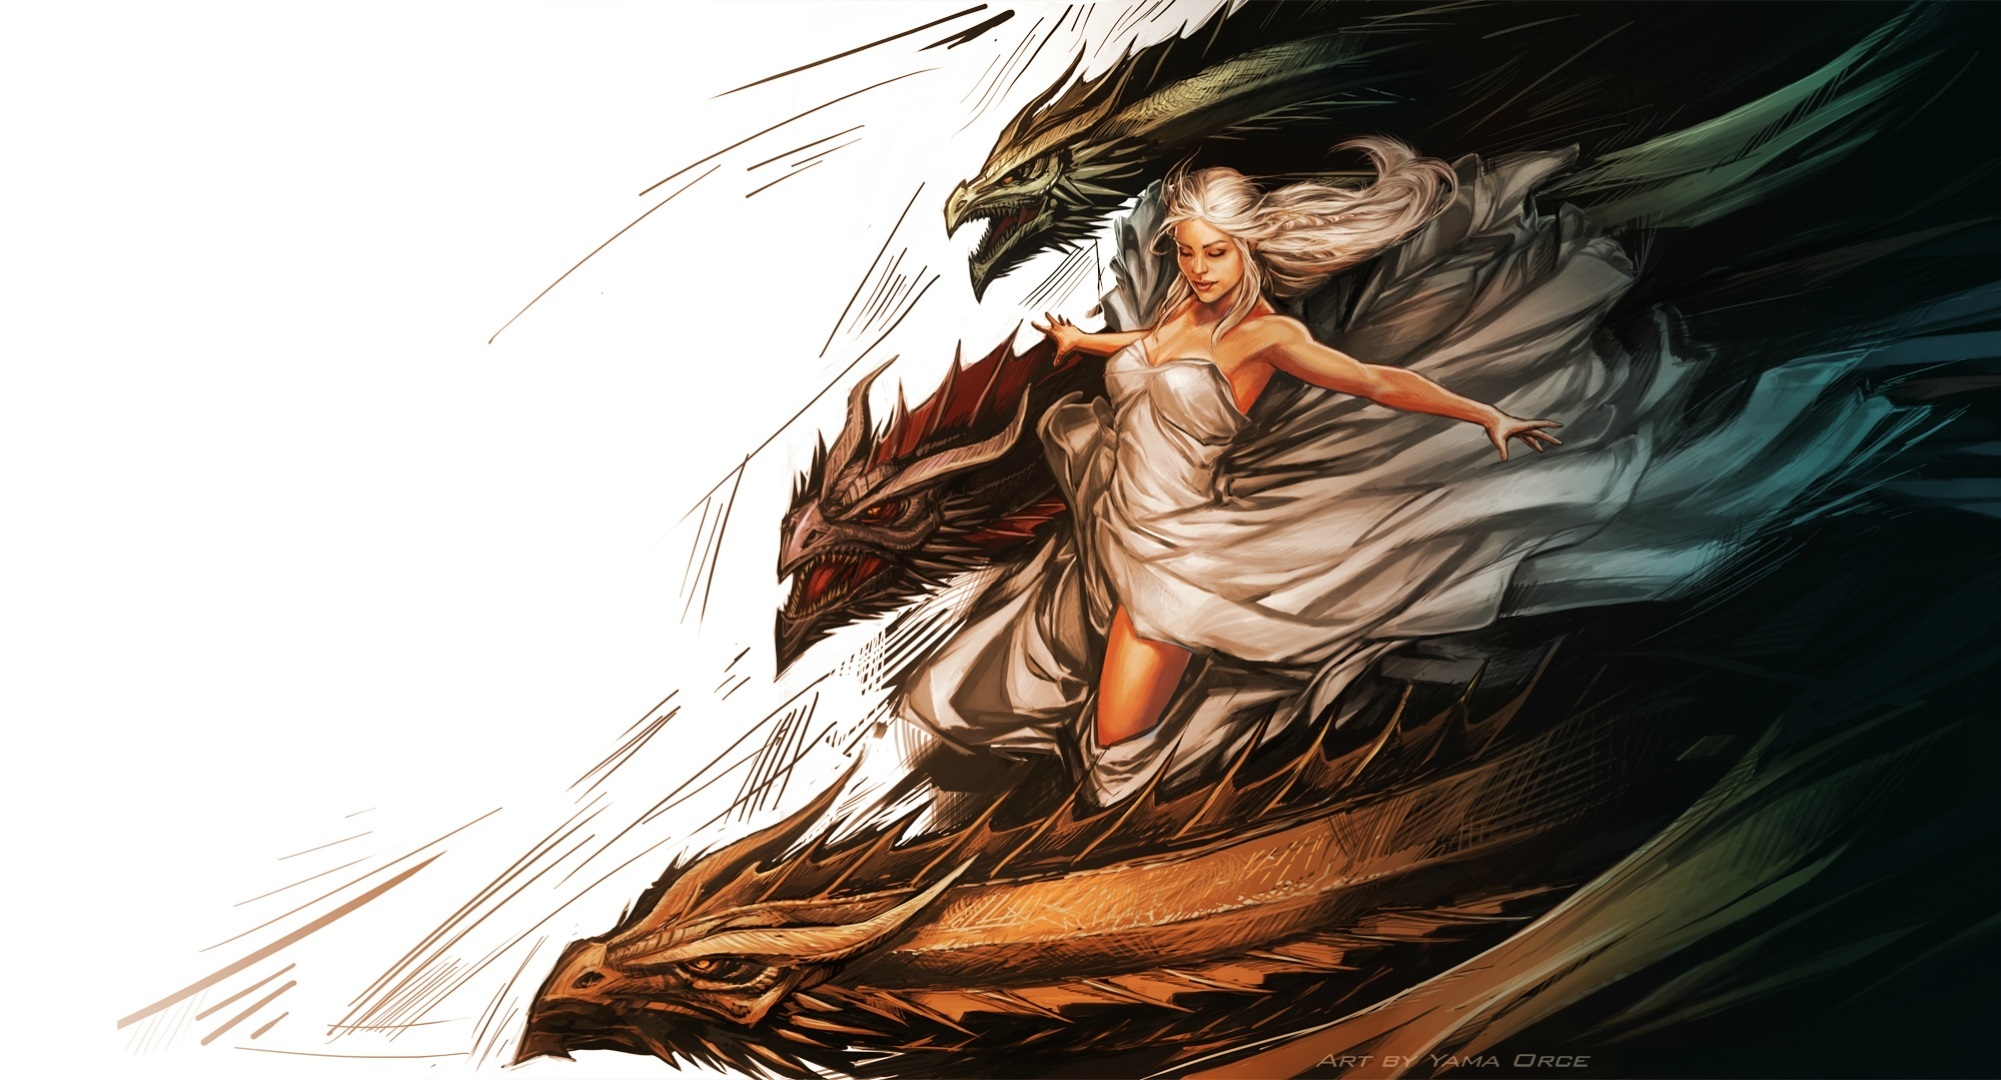 juego de tronos dragon wallpaper,cg artwork,ilustración,arte,mitología,personaje de ficción